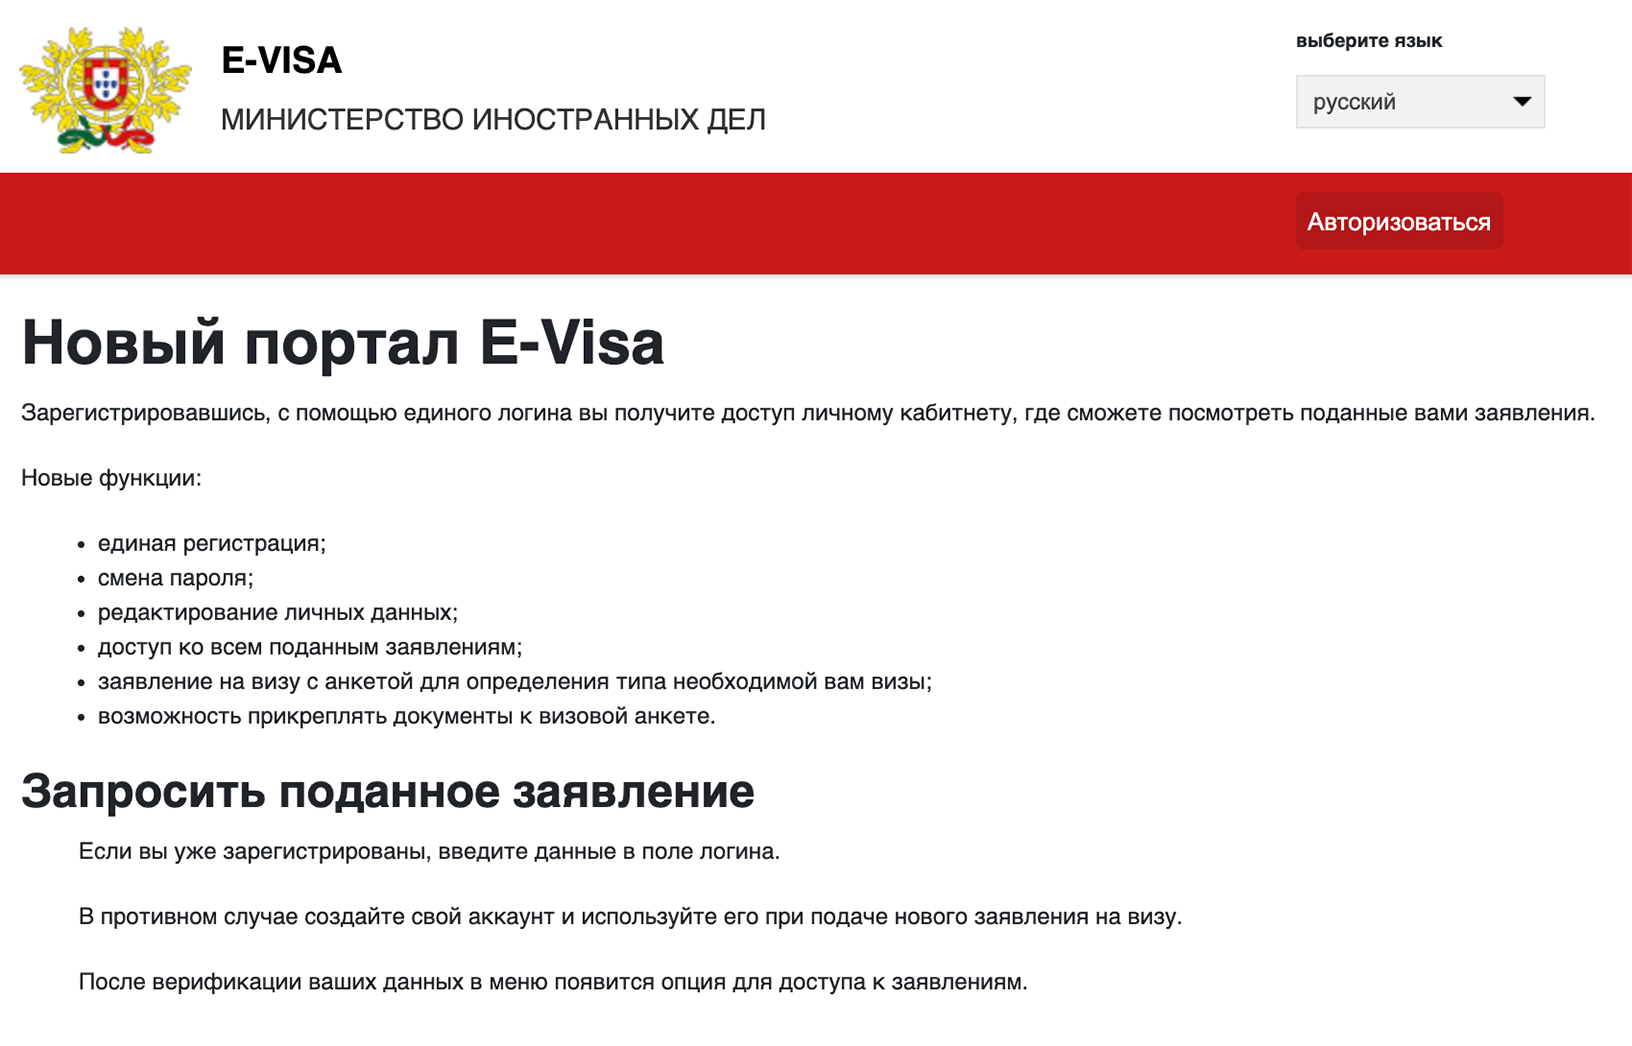 Чтобы записаться на подачу документов на визу в Москве, нужно зайти на сайт МИД Португалии и зарегистрироваться. На сайте можно выбрать русский язык. Чтобы зарегистрироваться, нажмите кнопку «Авторизоваться»